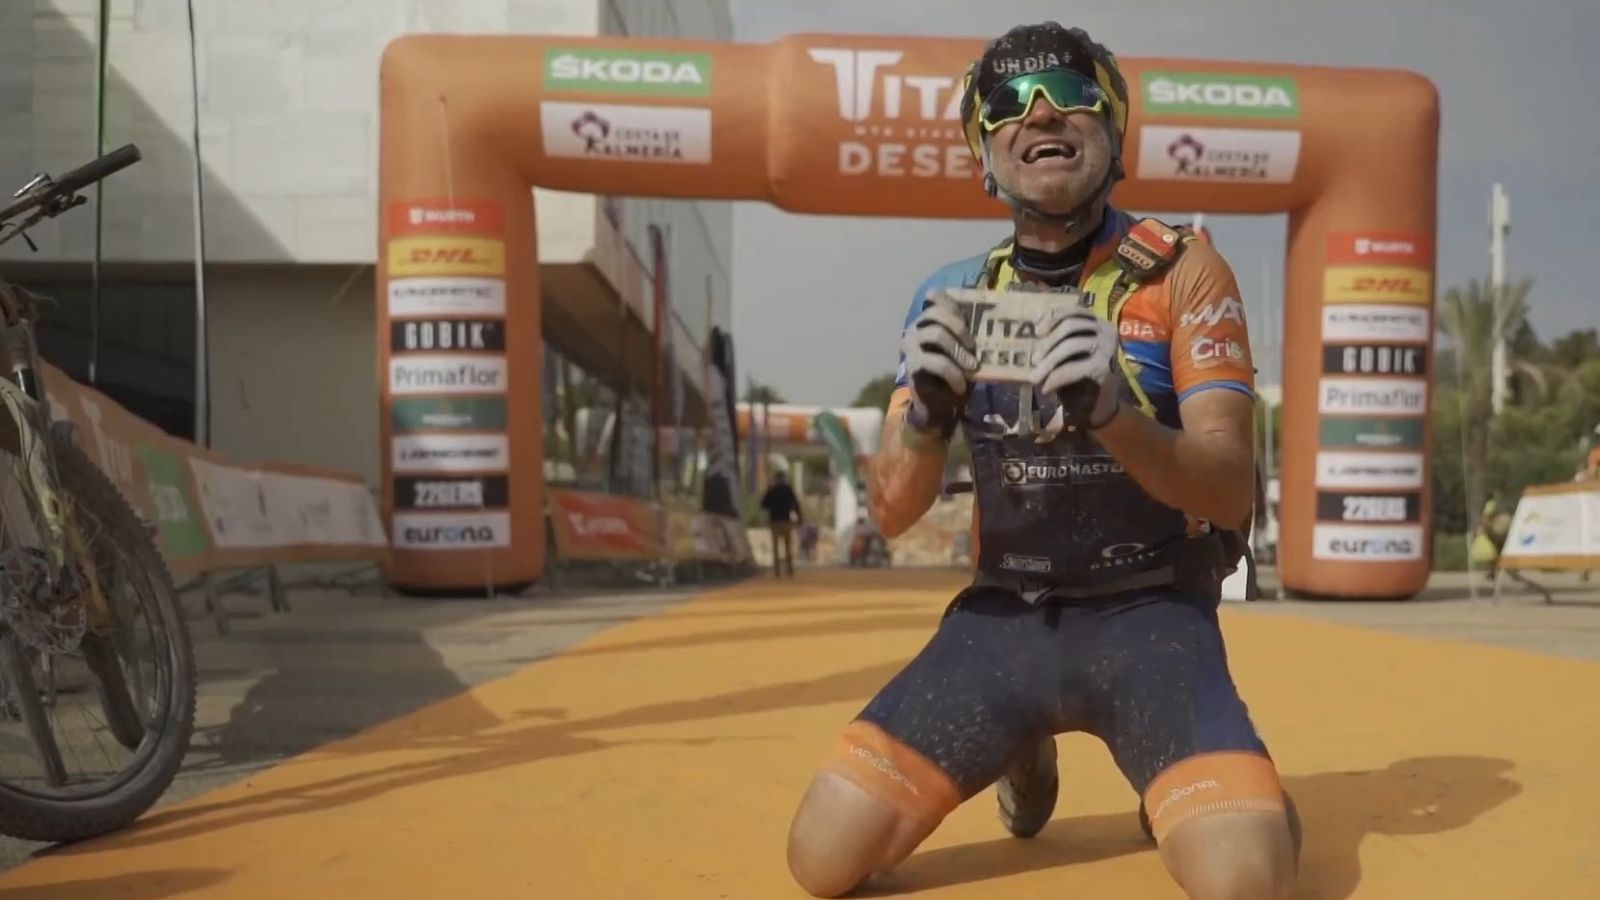 Titan Desert | Tomás Martínez lucha contra el cáncer montado en su bicicleta